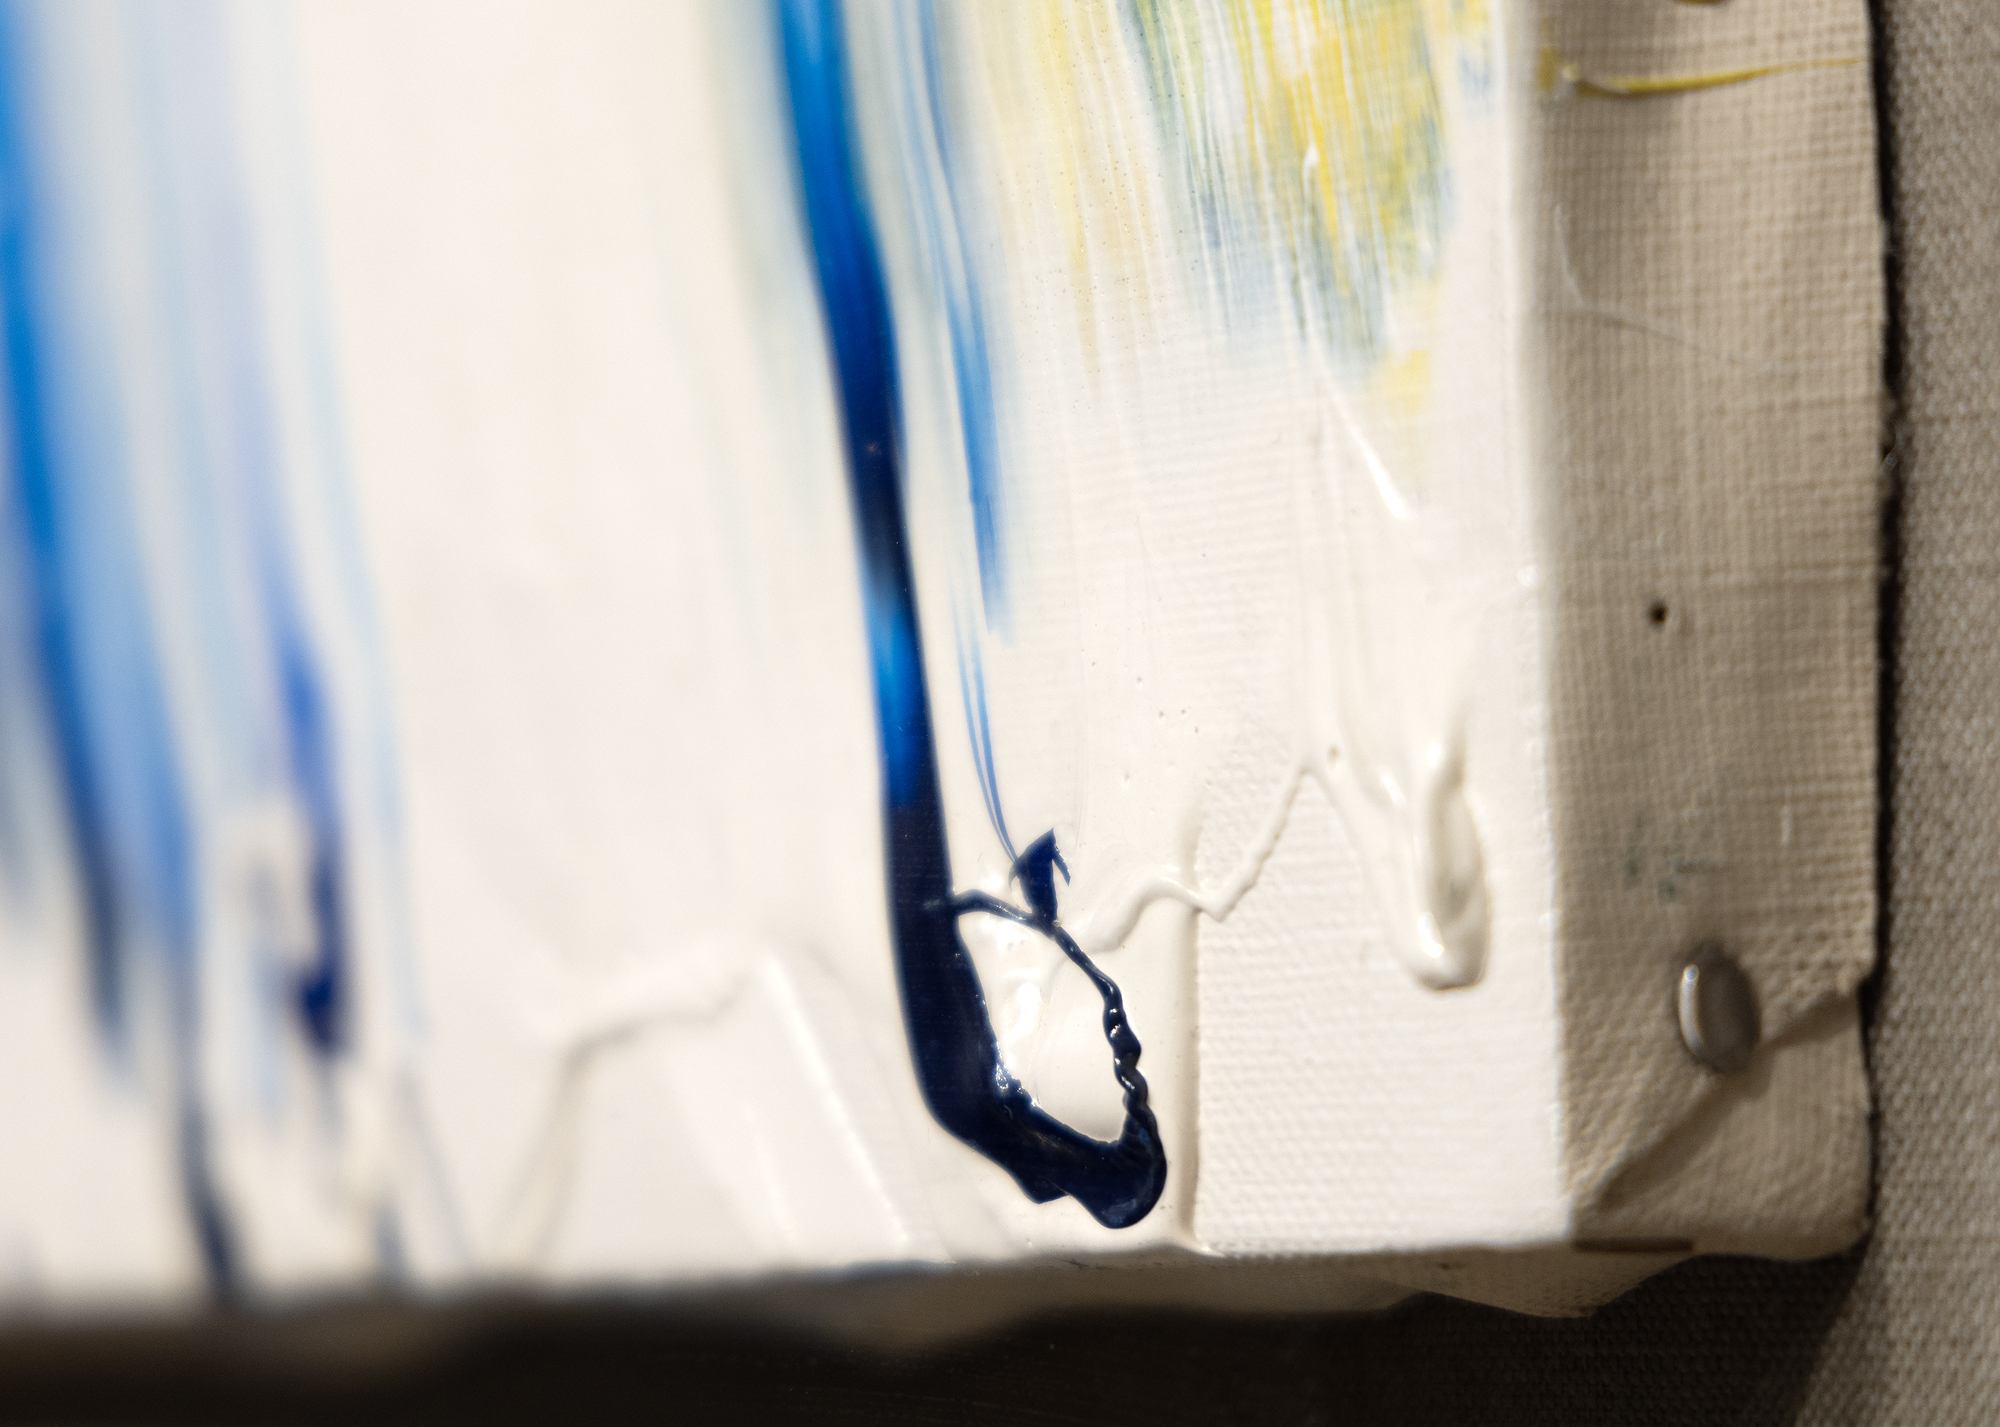 Unter den japanischen Gutai-Künstlern, die sich in den 1950er Jahren formierten, arbeitete keiner so schnell und furchtlos wie Kazuo Shiraga. Seine Gemälde zeichnen sich durch dynamische, gestische Pinselstriche aus, die oft auf unkonventionelle Art und Weise entstehen. Shiraga setzte bekanntlich seinen Körper als Malwerkzeug ein und trug oft Farbe mit seinen Füßen auf Leinwand oder Papier auf, während er an einem Seil hing. Die Texturen sind in der Regel dick, aber immer sehr taktil, mit Farbschichten, die dem Werk Tiefe und Körperlichkeit verleihen. Auf der anderen Seite setzt Taki auf rohe Streifen aus bunten Farben, die eine ungezügelte Energie und ein Gefühl von Freiheit und Rebellion hervorrufen, für das er bekannt ist, indem er traditionelle künstlerische Konventionen in Frage stellt und die Grenzen des kreativen Ausdrucks verschiebt.